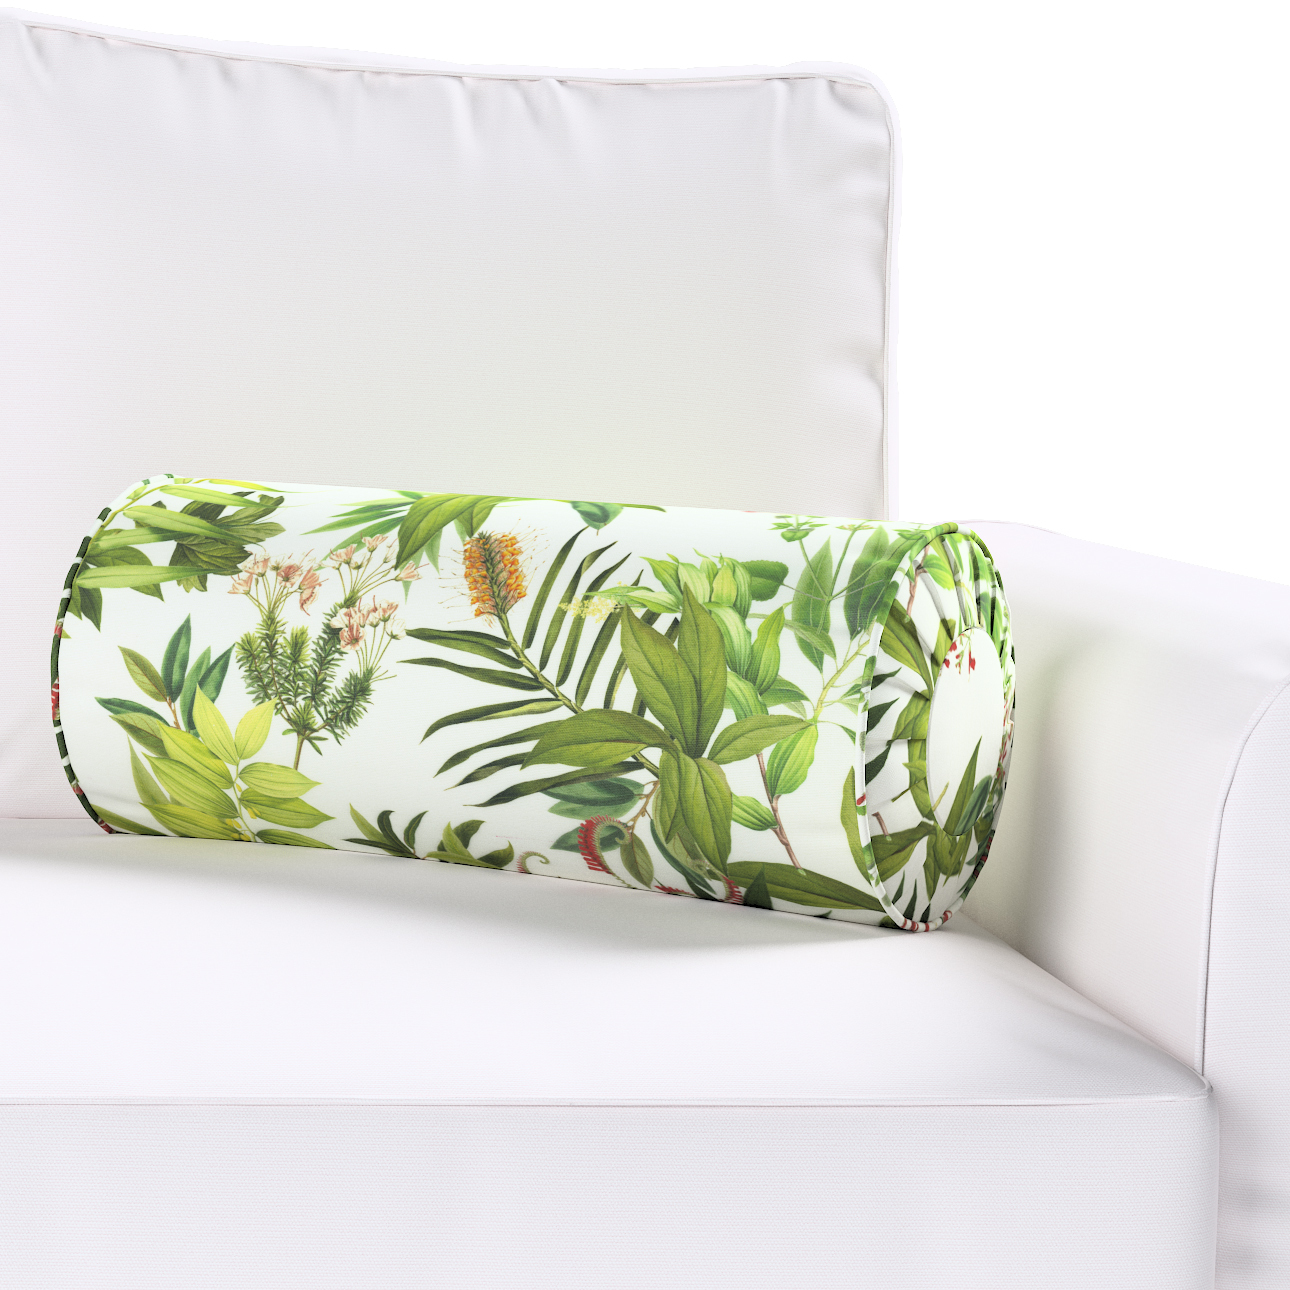 Nackenrolle mit Falten, grün-weiß, Ø 20 x 50 cm, Tropical Island (143-69) günstig online kaufen